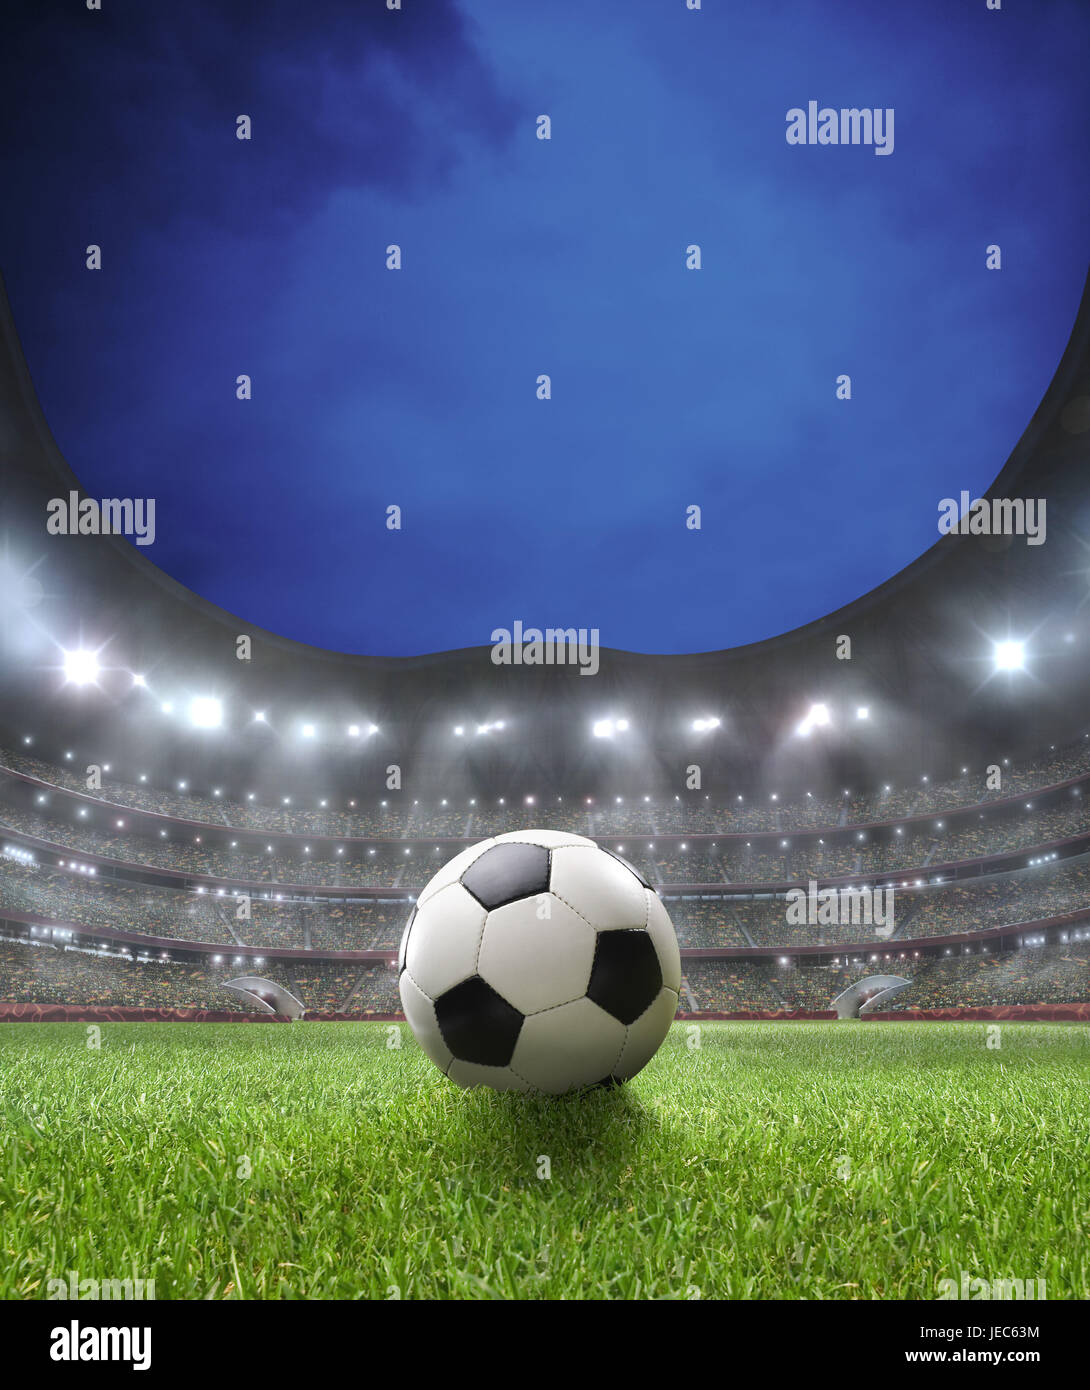 Football stadium, turf, illuminateds, ball, spectator's stand, Stock Photo